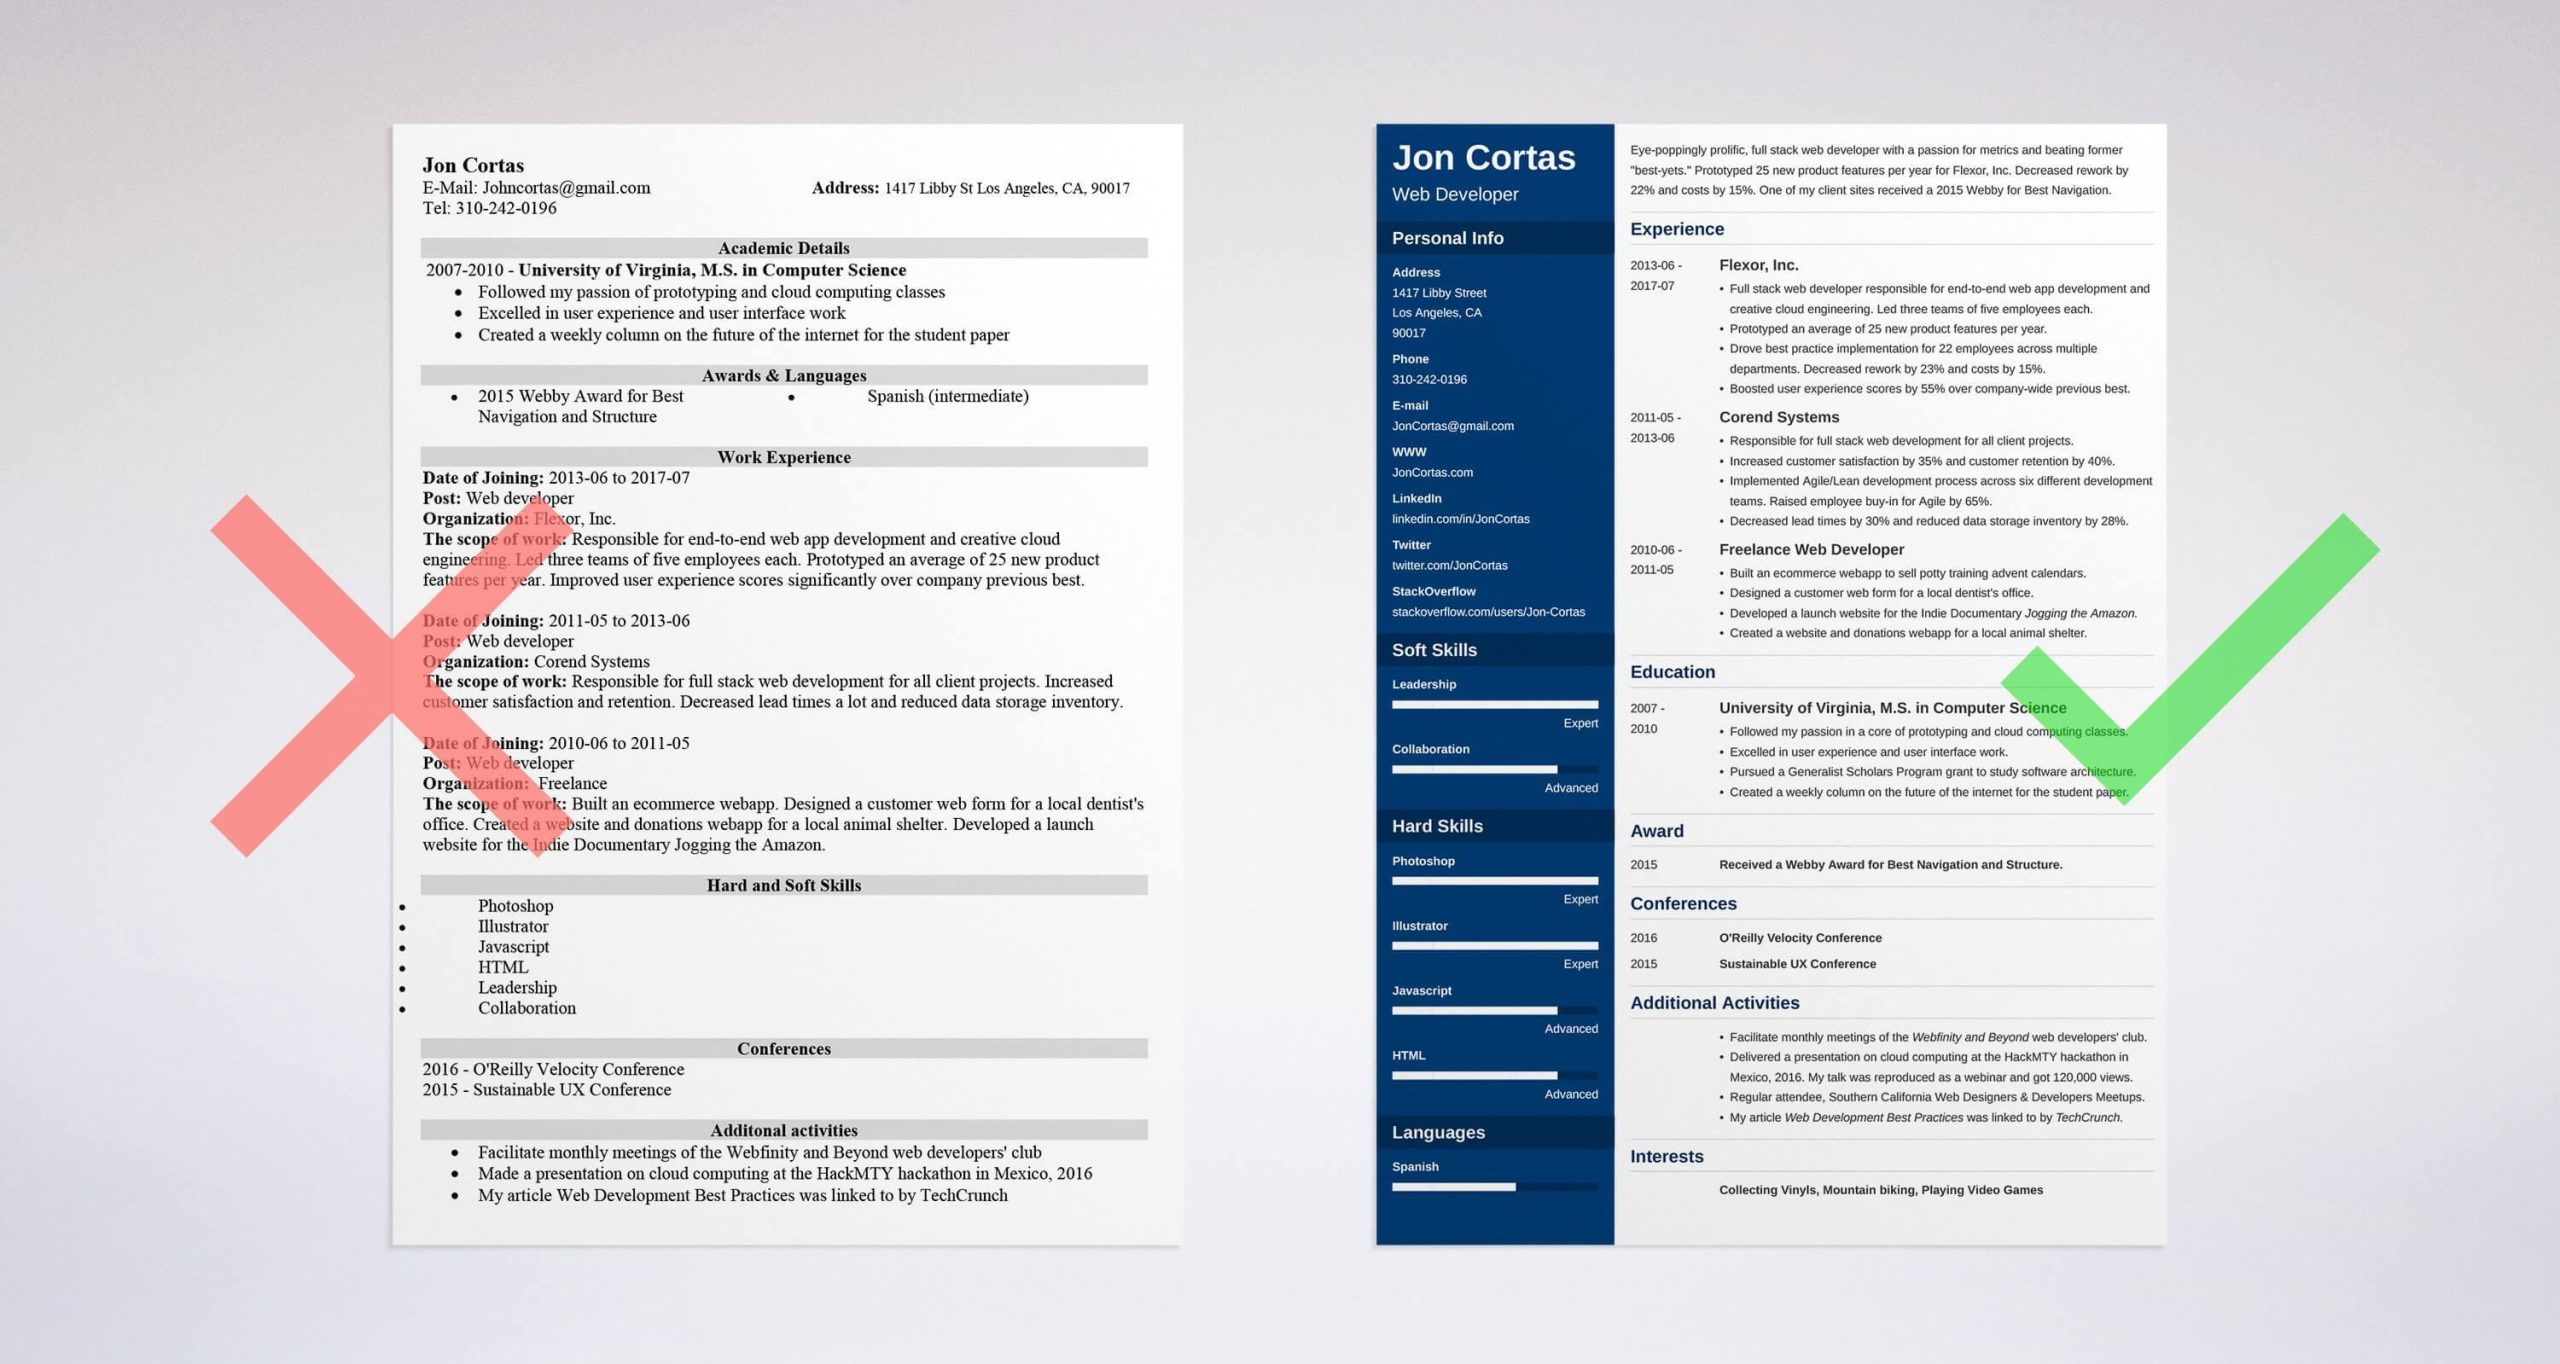 Sample Resume for Web Developer Advertising Agency Web Developer Resume Examples [template & Guide 20 Tips]